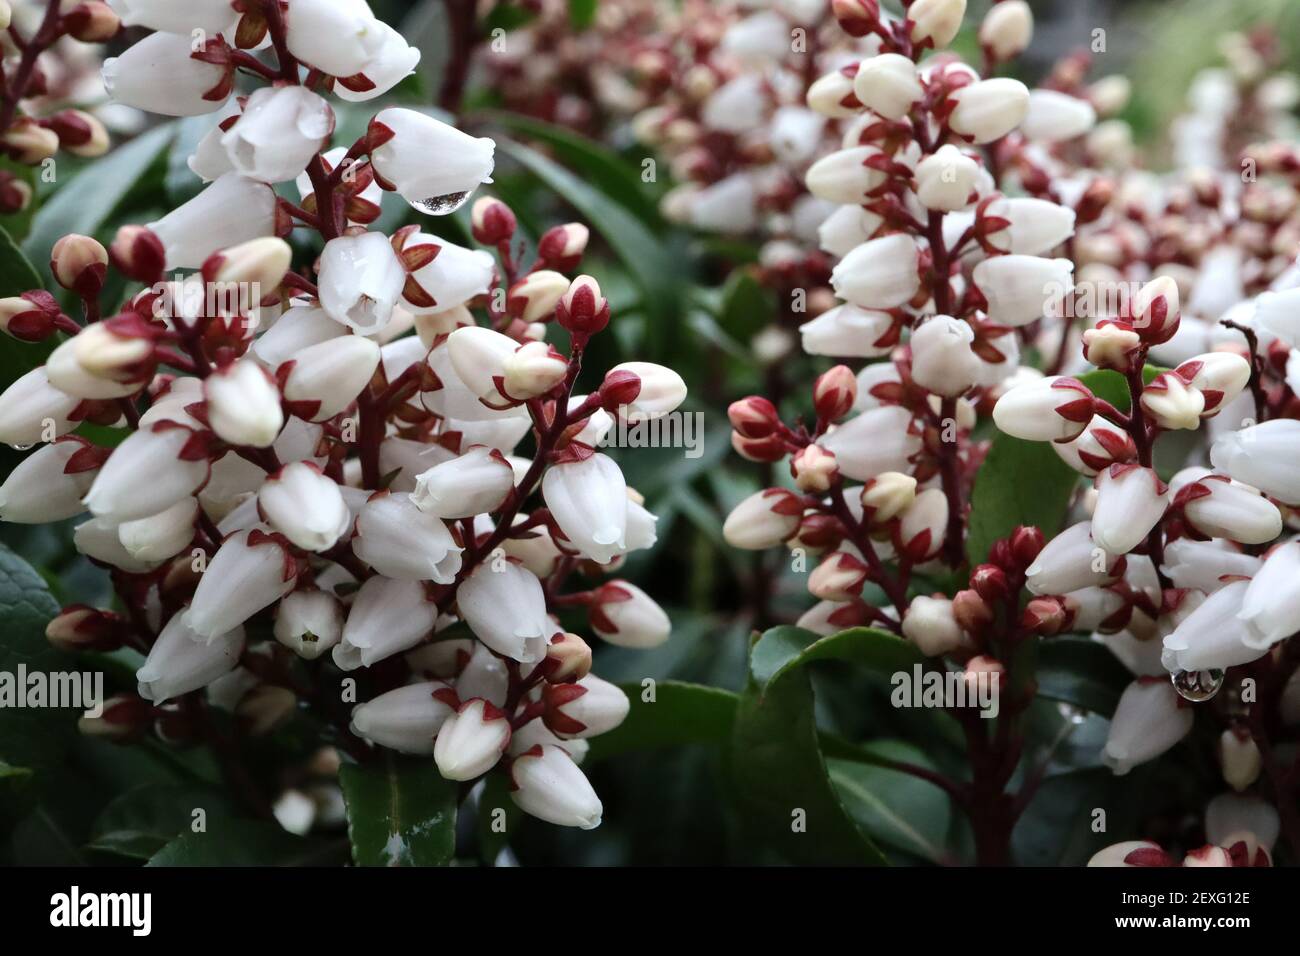 Pieris japonica ‘Bonfire’ Japanese Andromeda Bonfire – fleurs blanches en forme d’urne avec des tepals rouges et des feuilles vertes, mars, Angleterre, Royaume-Uni Banque D'Images